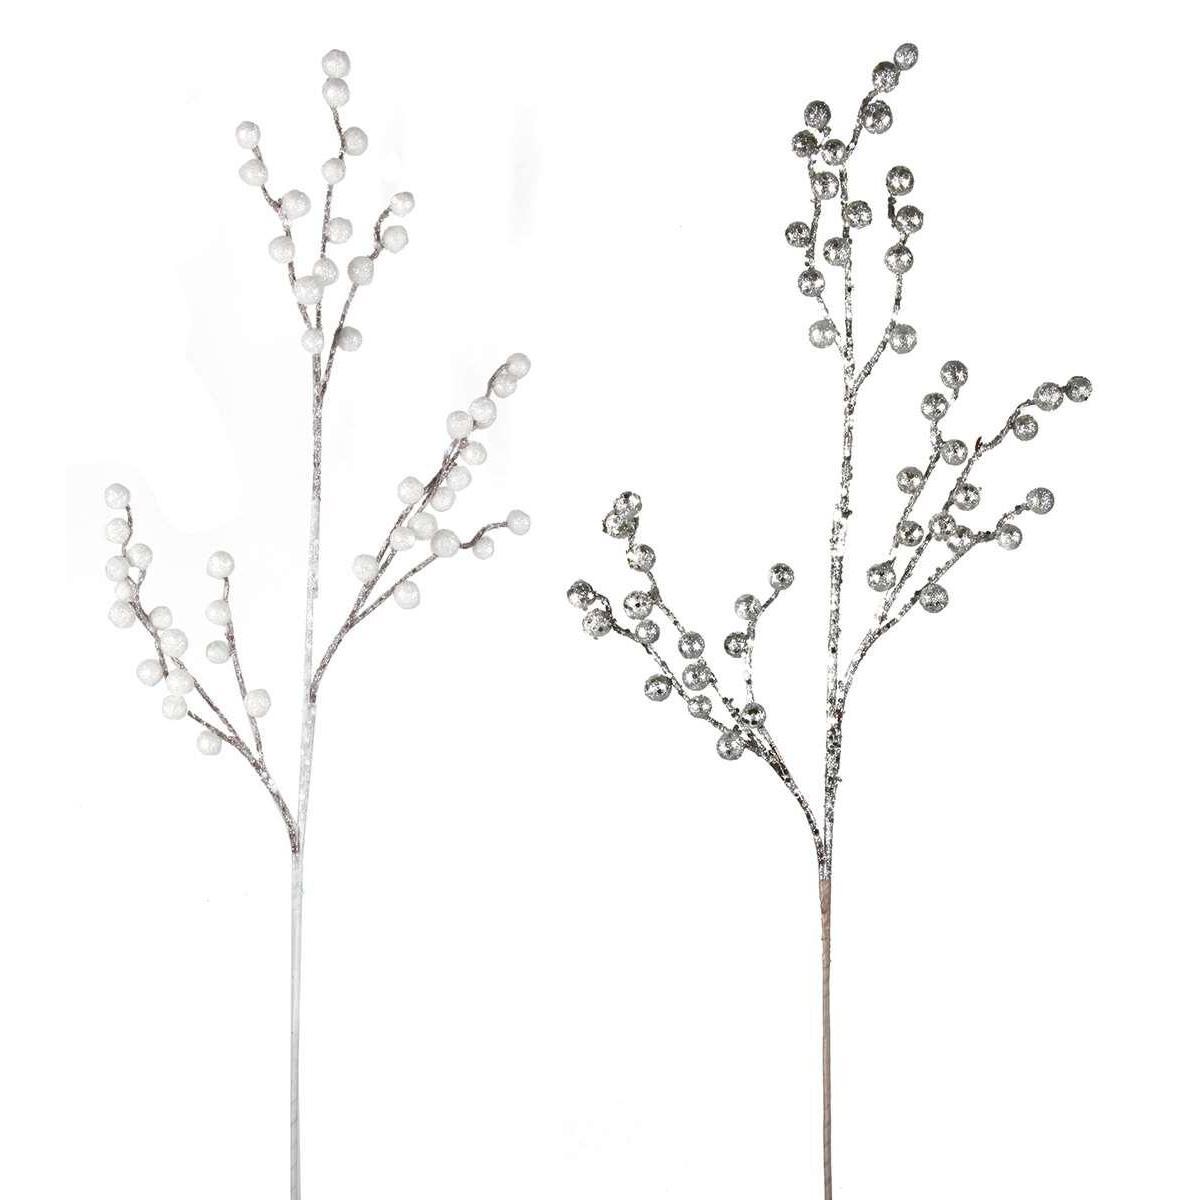 Branche de baies synthétique pailletée - H 82 cm - Argenté, blanc